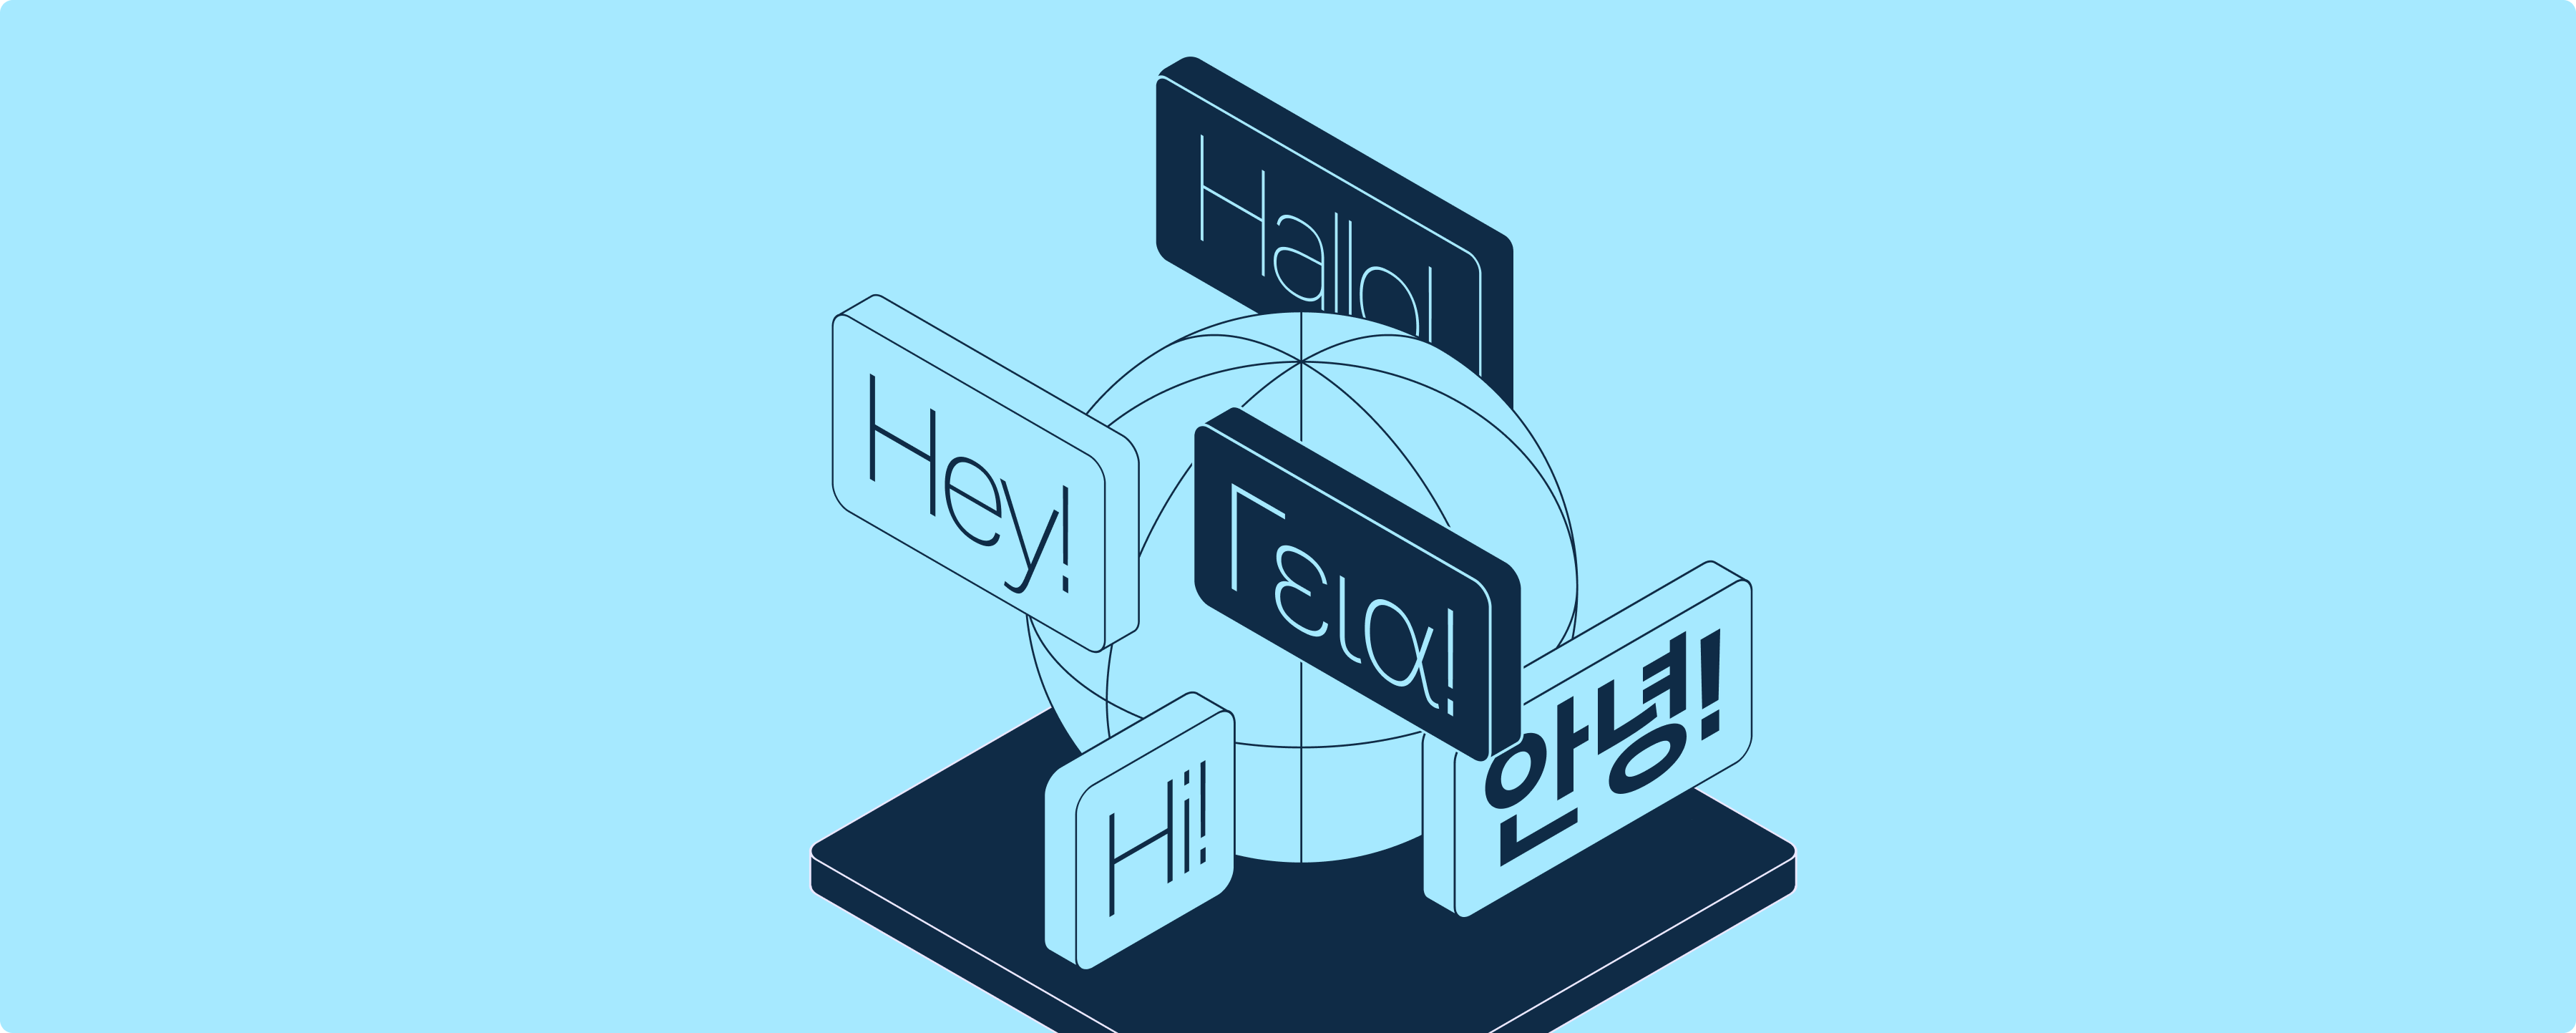 Ilustracja przedstawiająca kulę ziemską otoczoną wyrazami „Cześć” w różnych językach